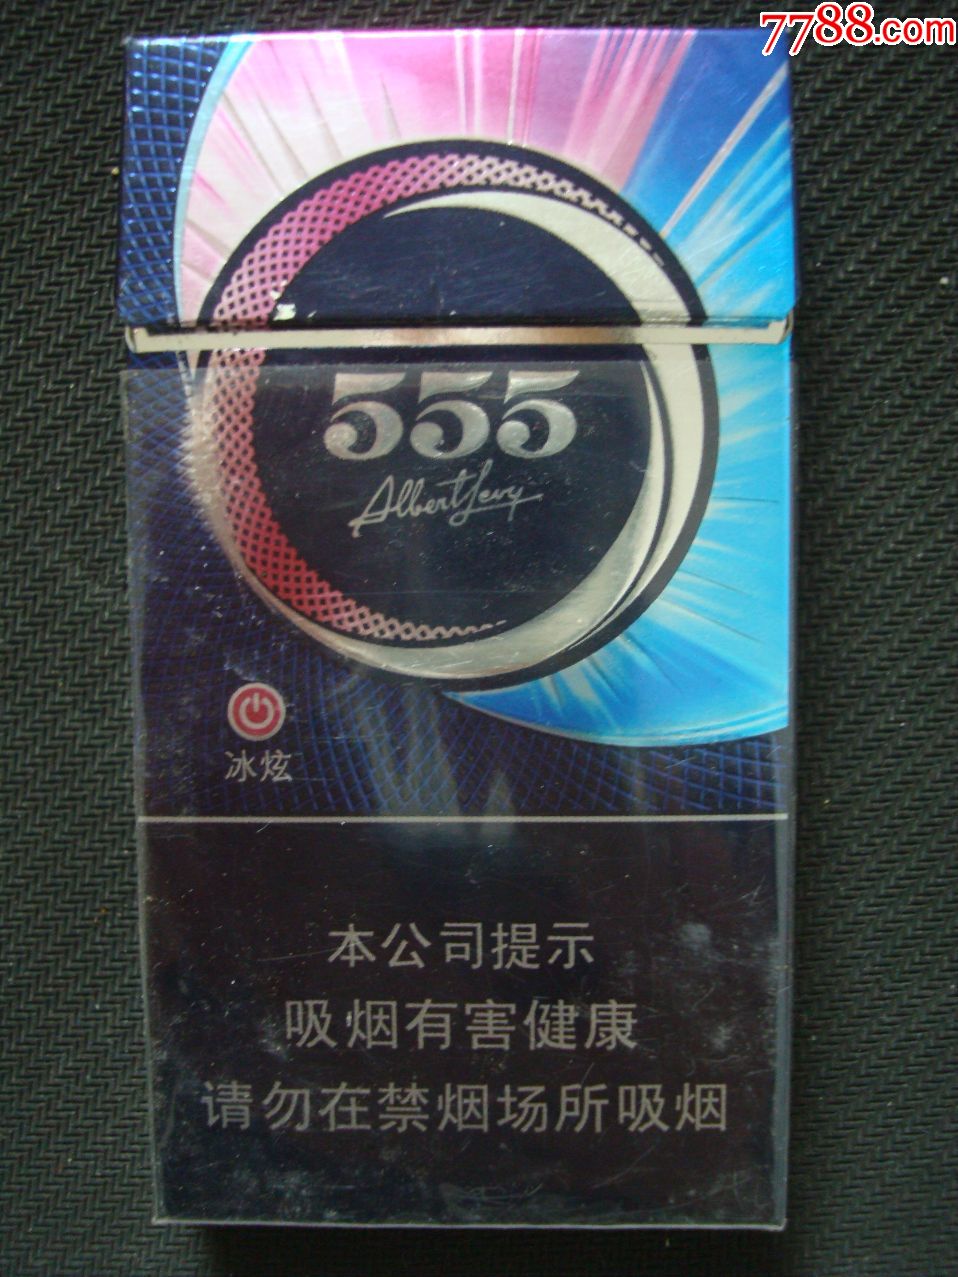 555――冰炫